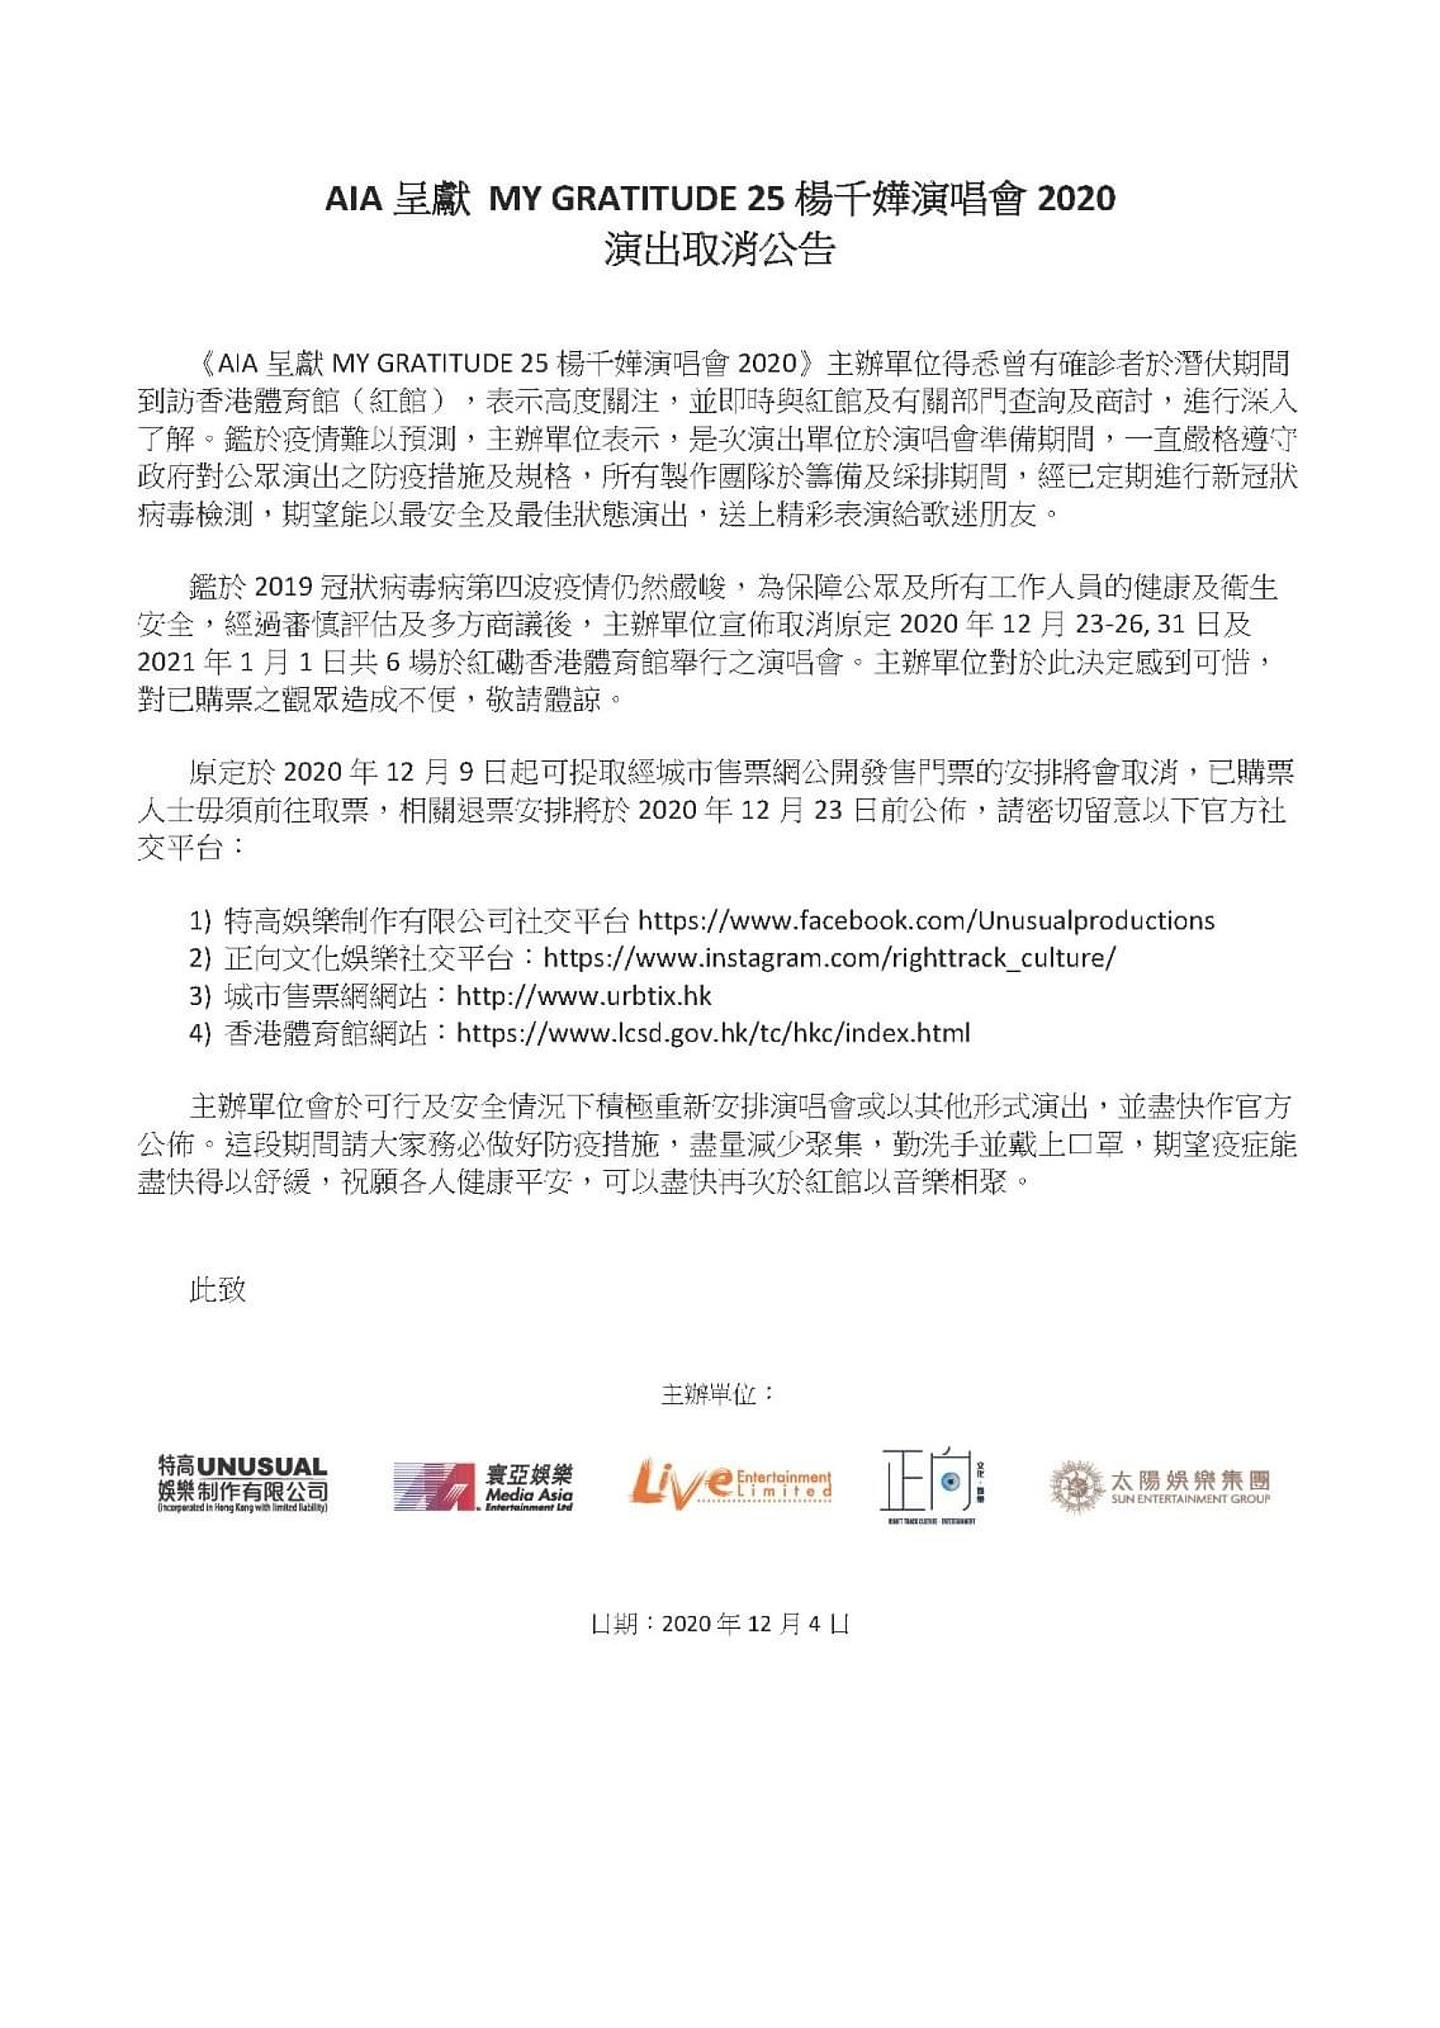 歌手楊千嬅原定12月舉行演唱會，但12月4日公布會取消所有演唱會。